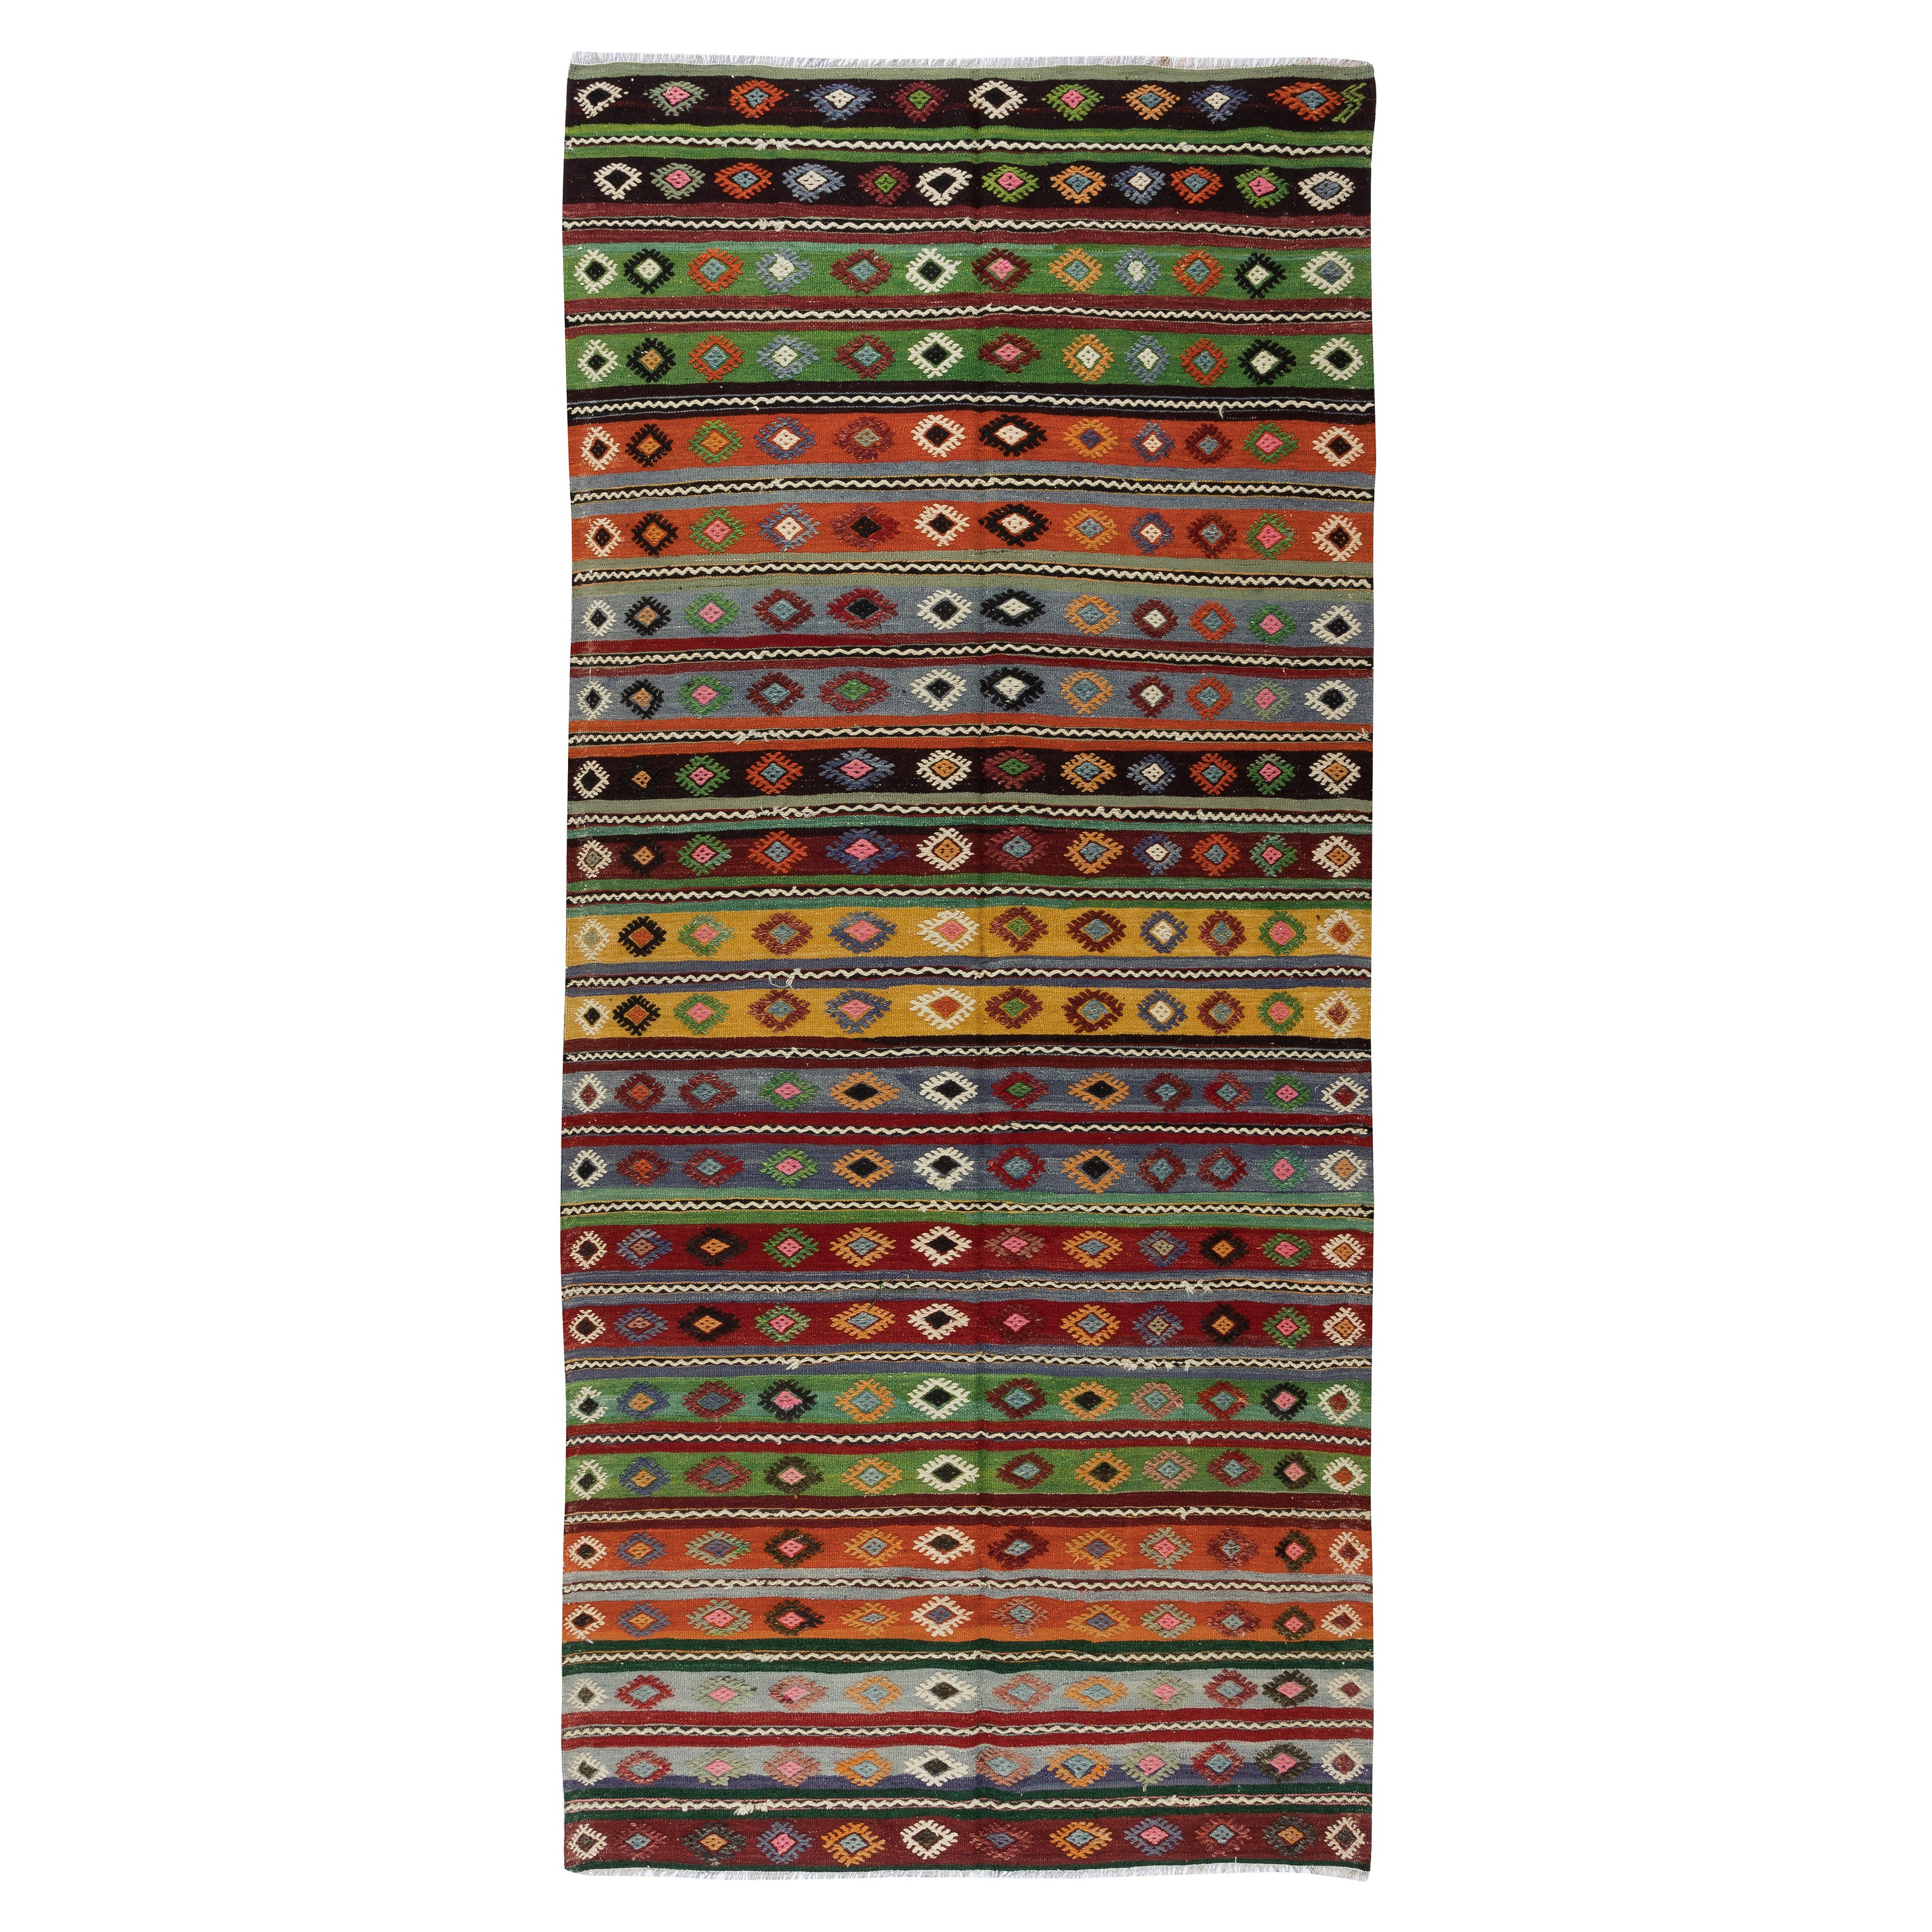 5x11.2 Ft Vintage Türkischer Kelim-Läufer im Vintage-Stil. Bunter handgewebter Teppich für den Hausflur